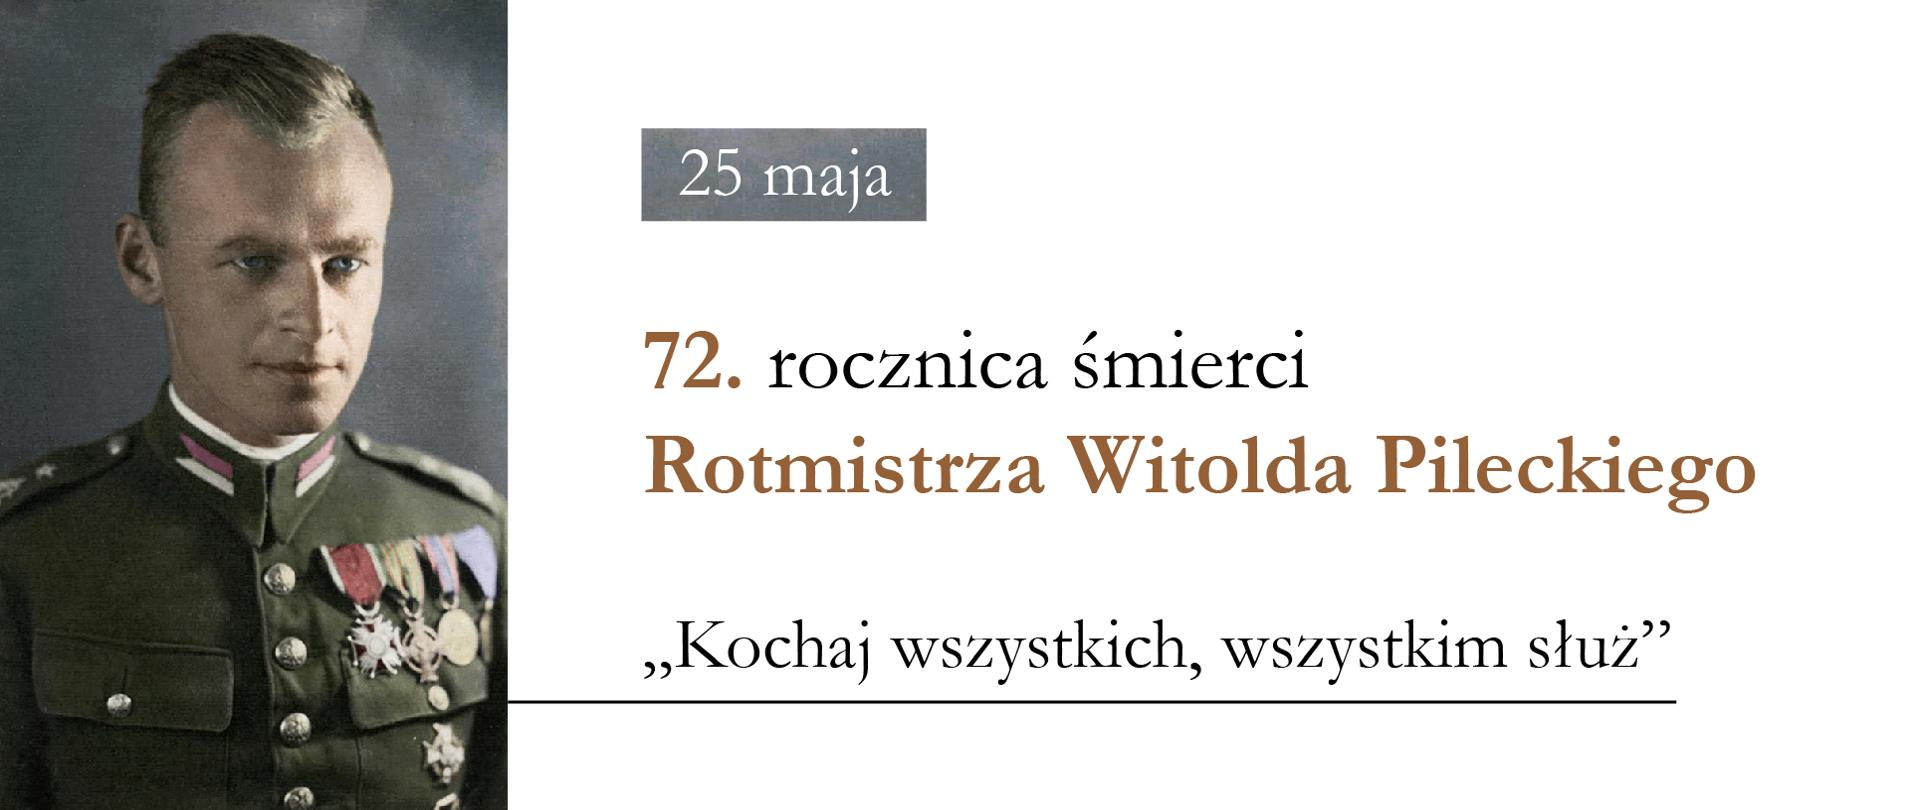 Fotografia Witolda Pileckiego, obok tekst: 25 maja – 72. rocznica śmierci Rotmistrza Witolda Pileckiego – "Kochaj wszystkich, wszystkim służ"